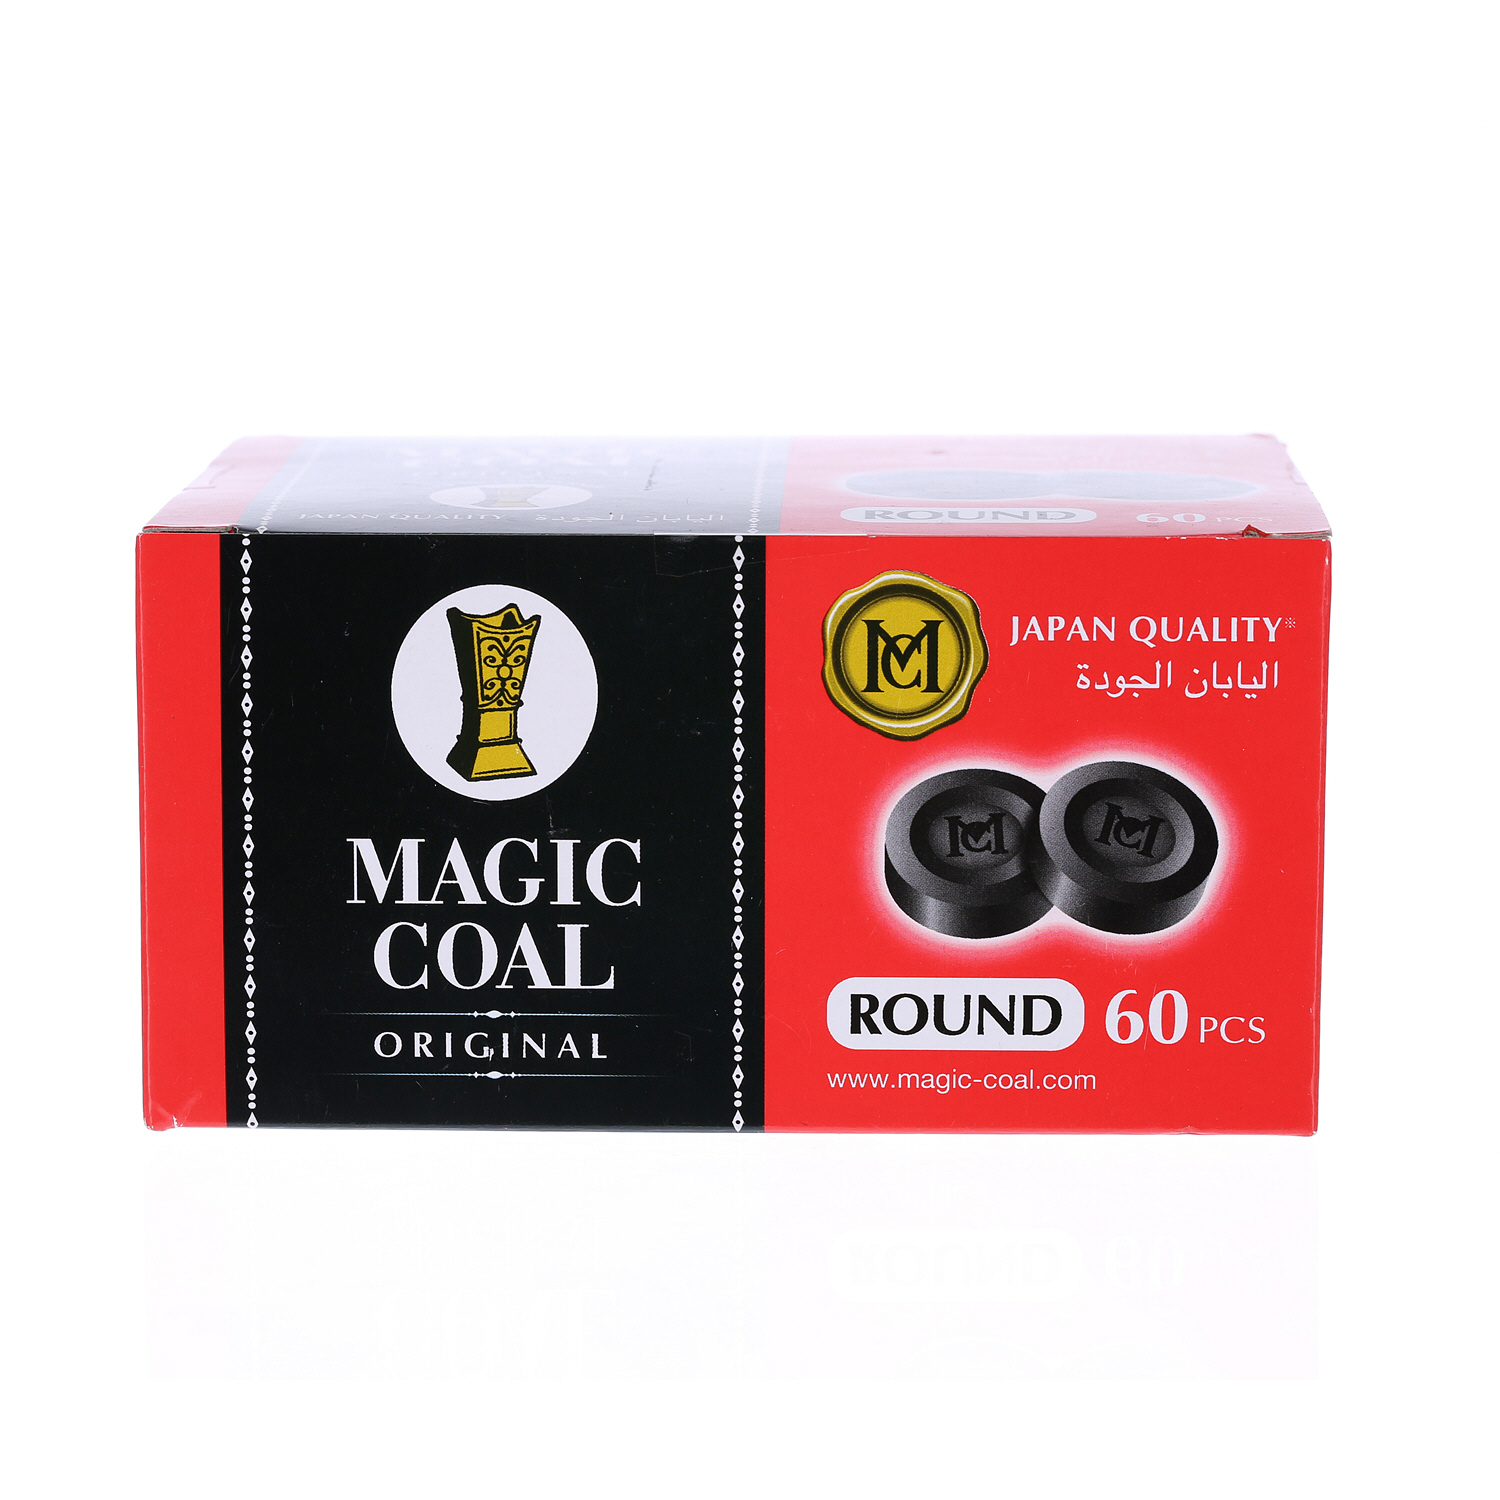 Magic Coal Charcoal Round 60PCS